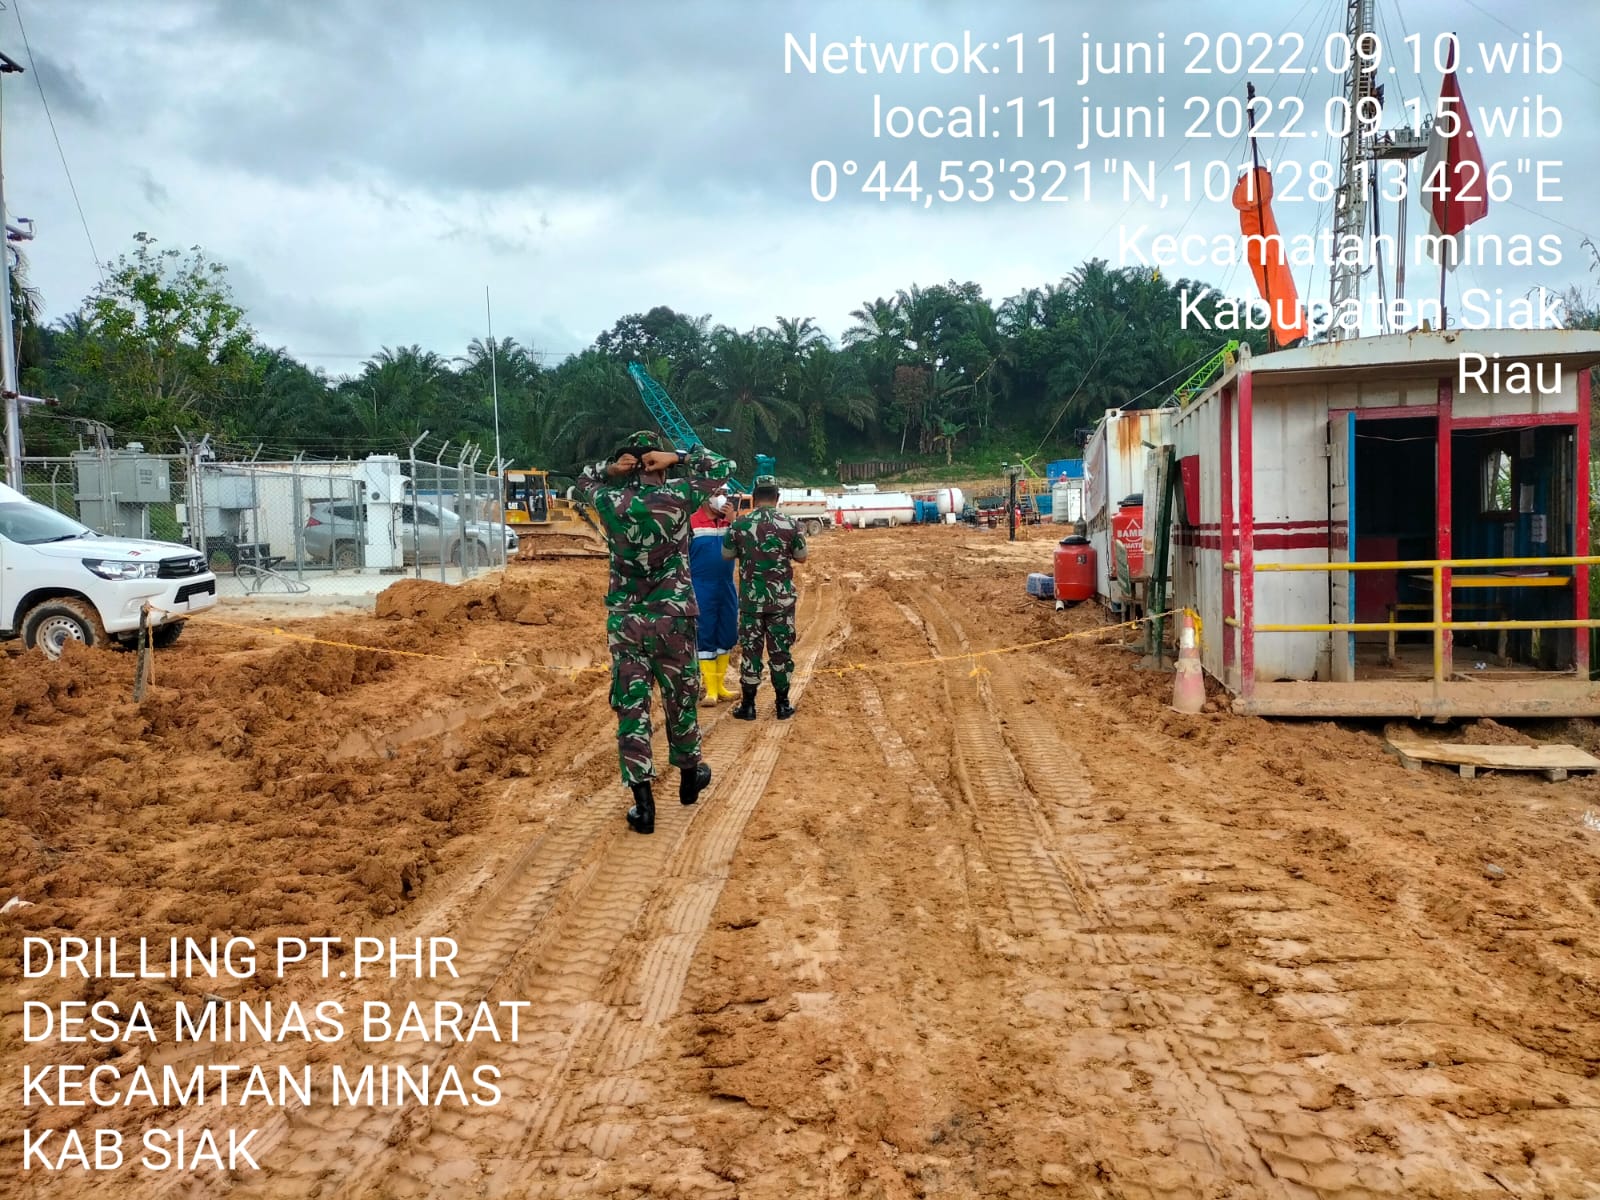 Serma Nasir dan Serda Parjuni Lakukan Giat Patroli Drilling Disejumlah Lokasi PT PHR Minas